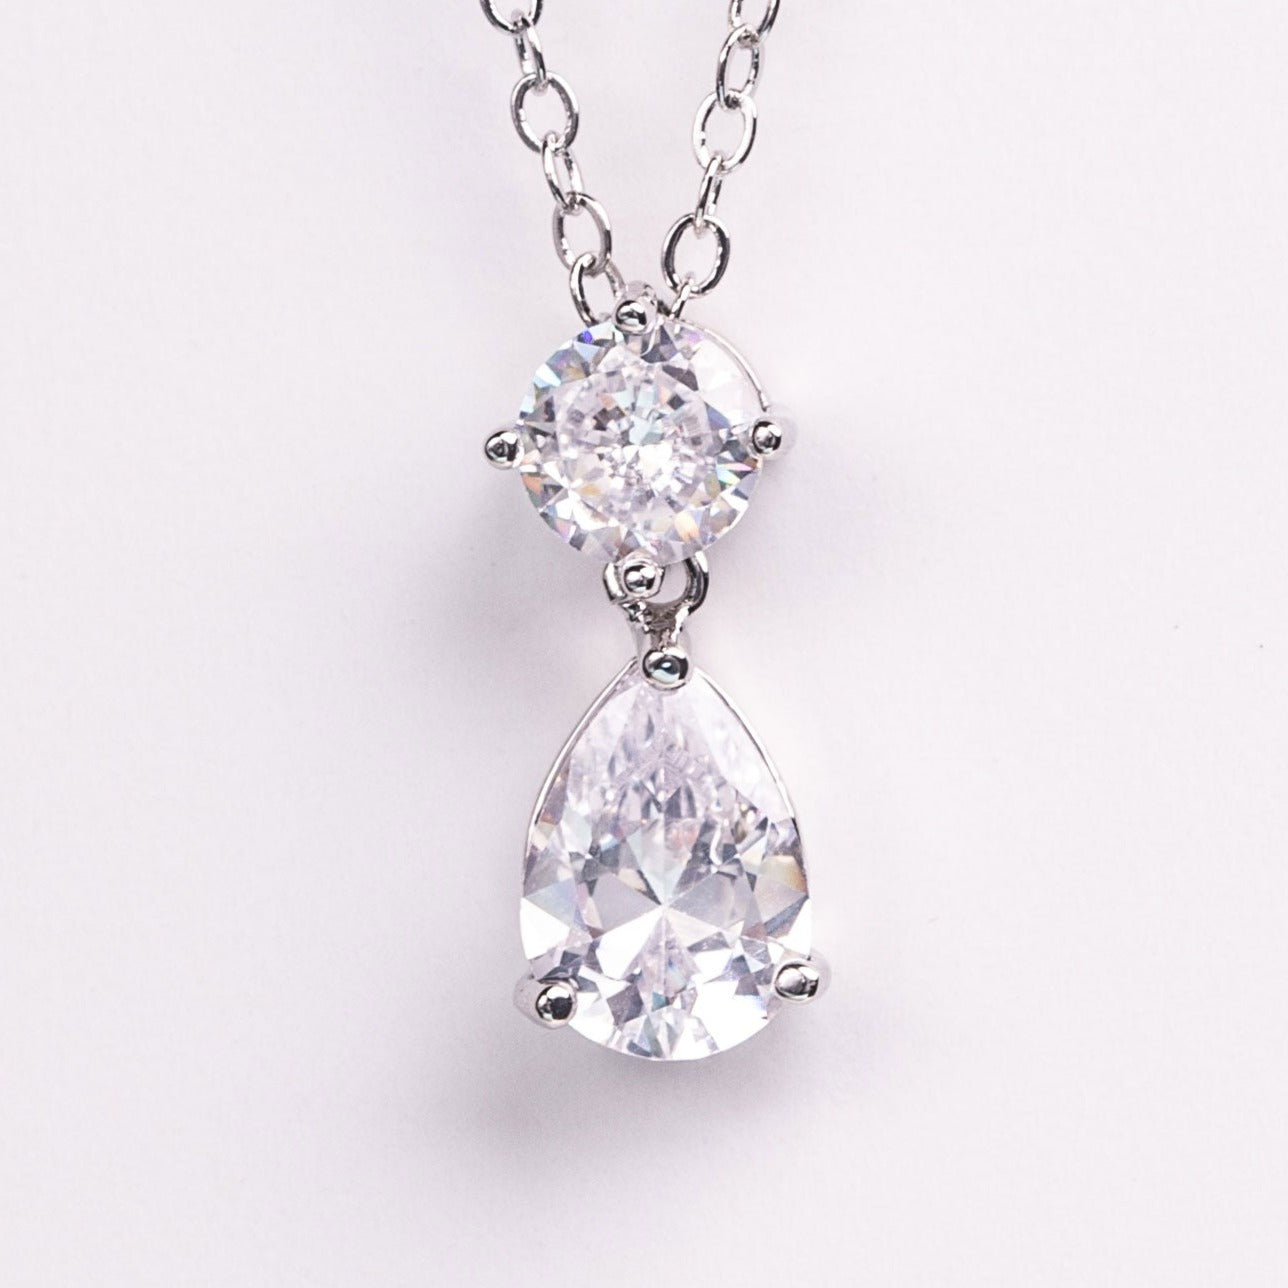 Elodie Tear Drop Crystal Earrings & Pendant Necklace Set